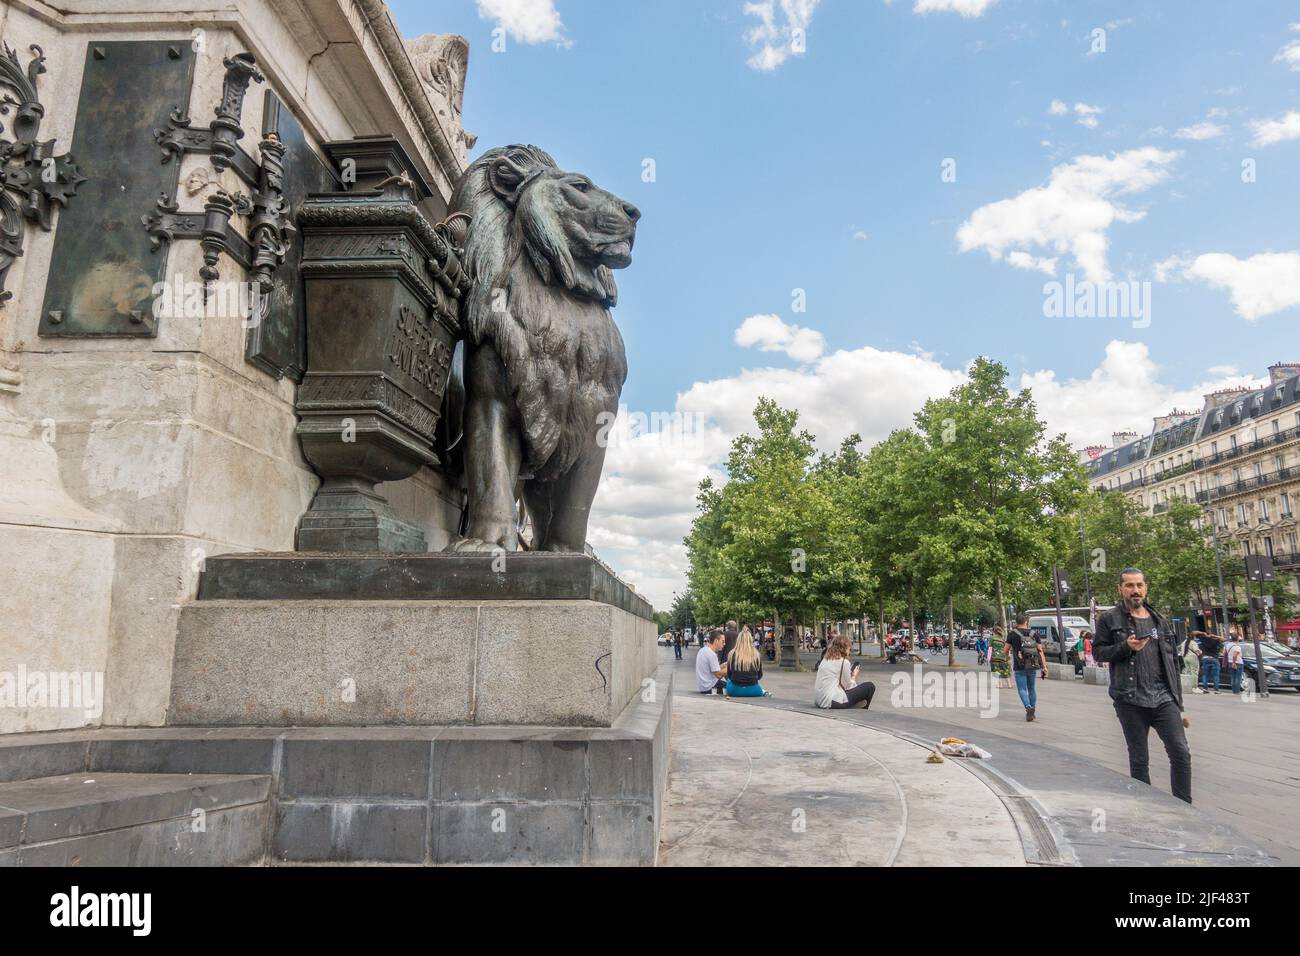 Lion statue part of Statue of Marianne, place de la république, Monument à la République,  Republic Square, Paris, France. Stock Photo